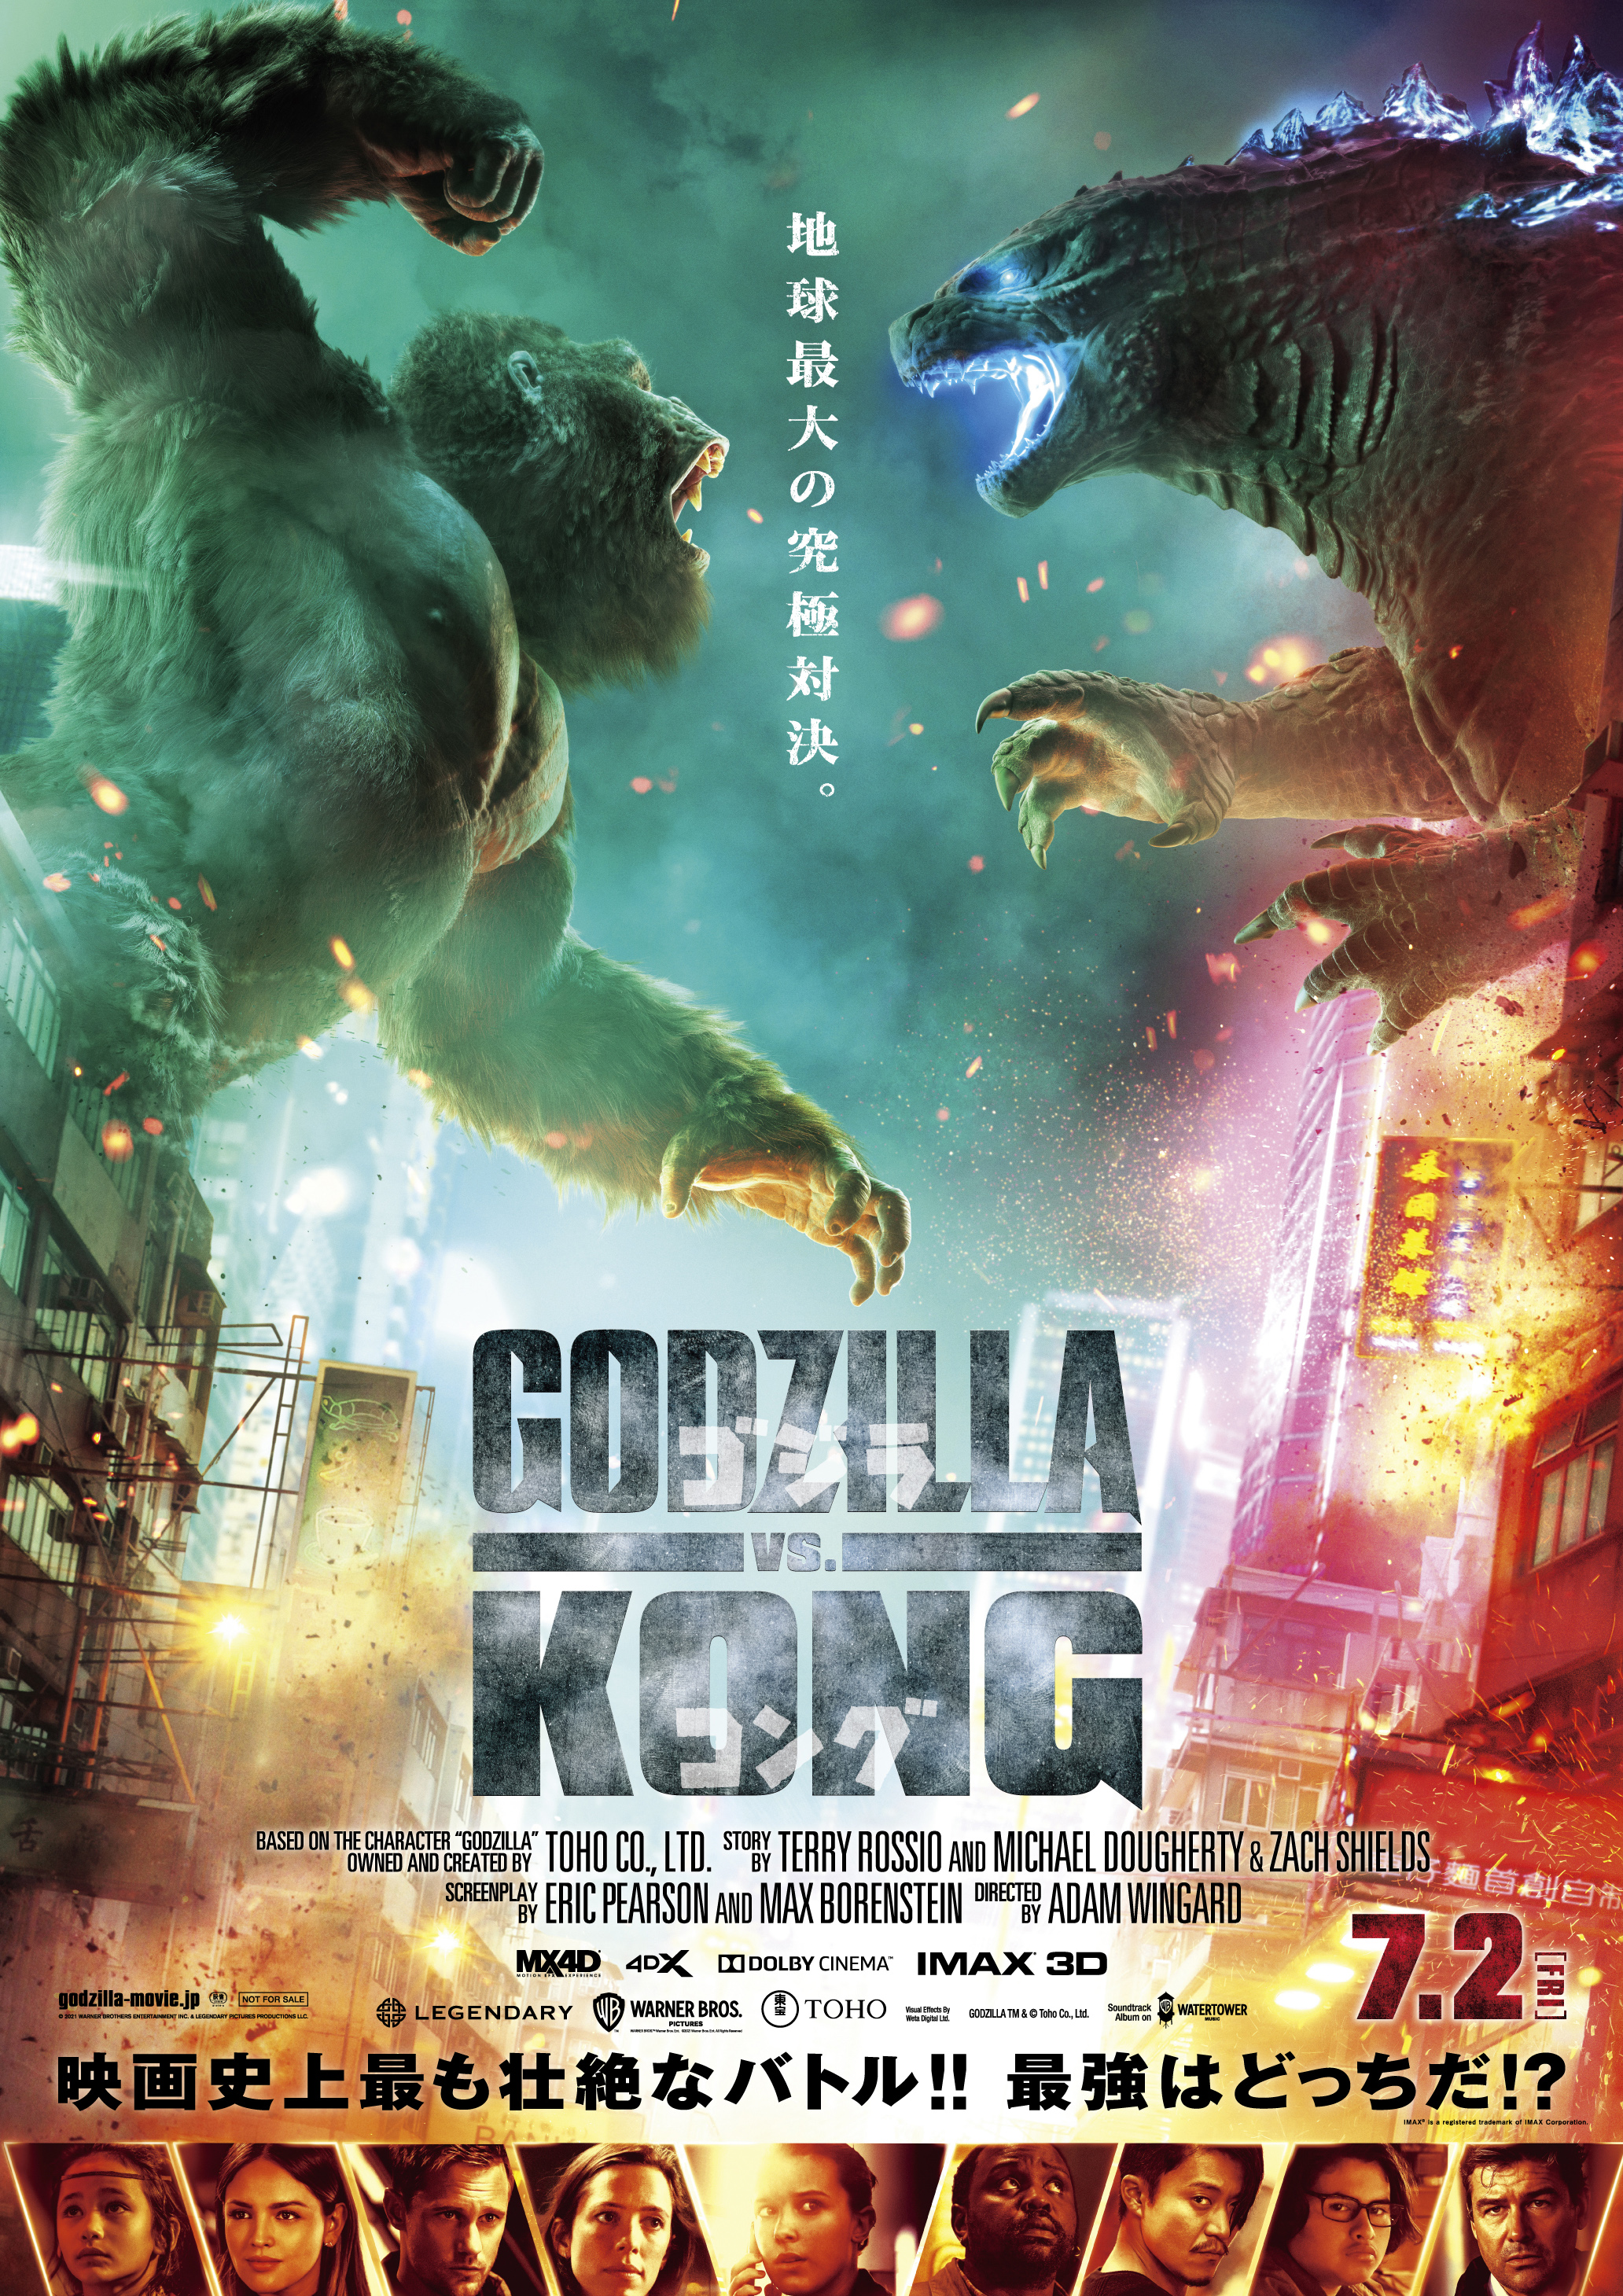 Godzilla: All the Movies Ranked Including 'Godzilla vs. Kong